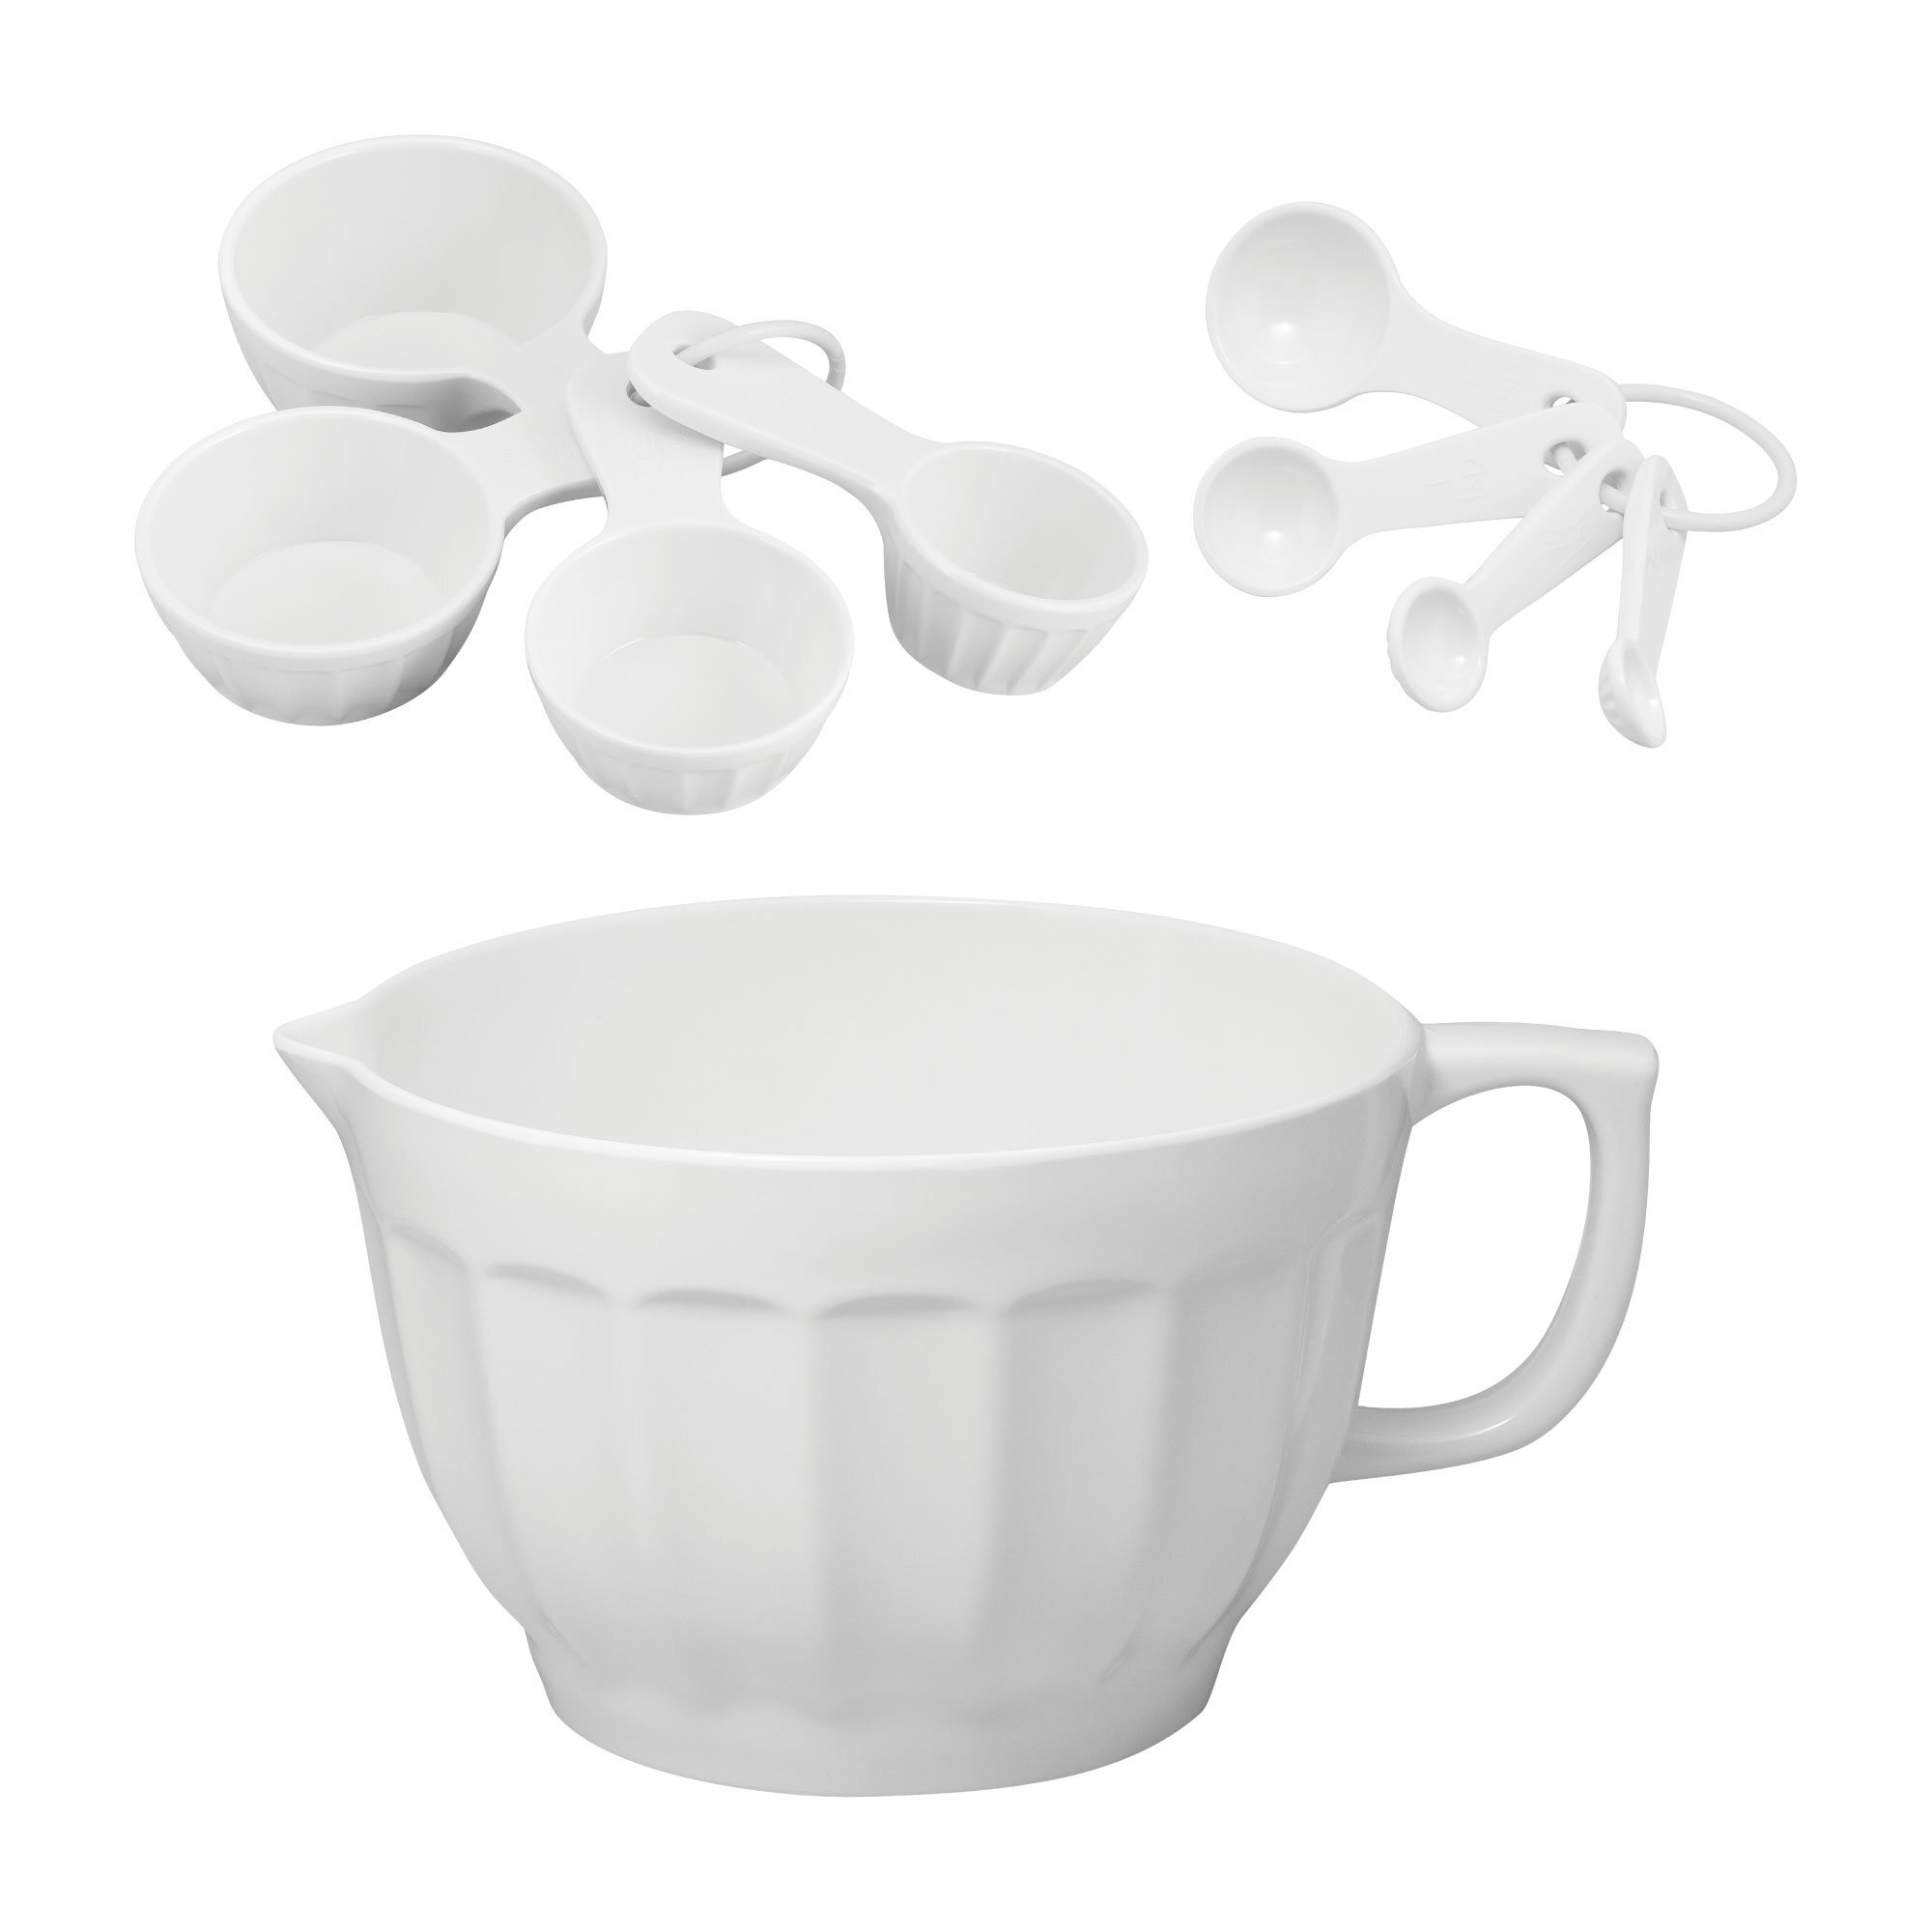 https://assets.wfcdn.com/im/58296522/compr-r85/1243/124373893/latte-melamine-mixing-bowl-set.jpg